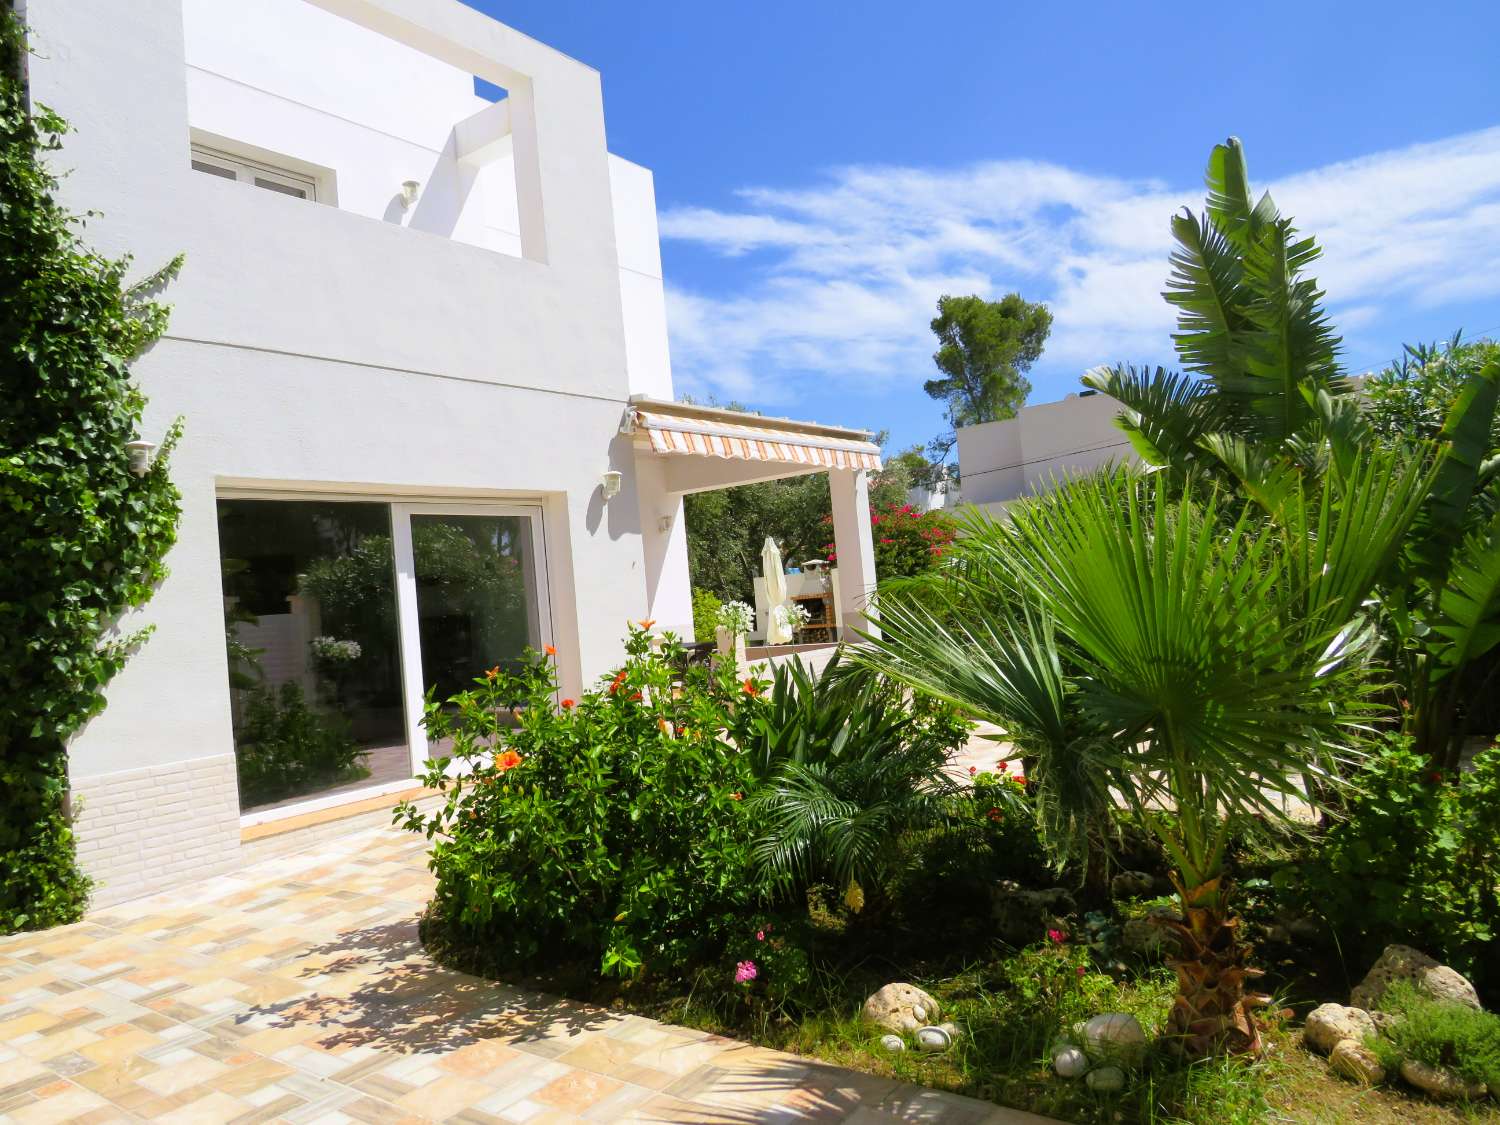 Casa moderna cerca de la playa en la bonita urbanización de Las Tres Calas con piscina privada y barbacoa.